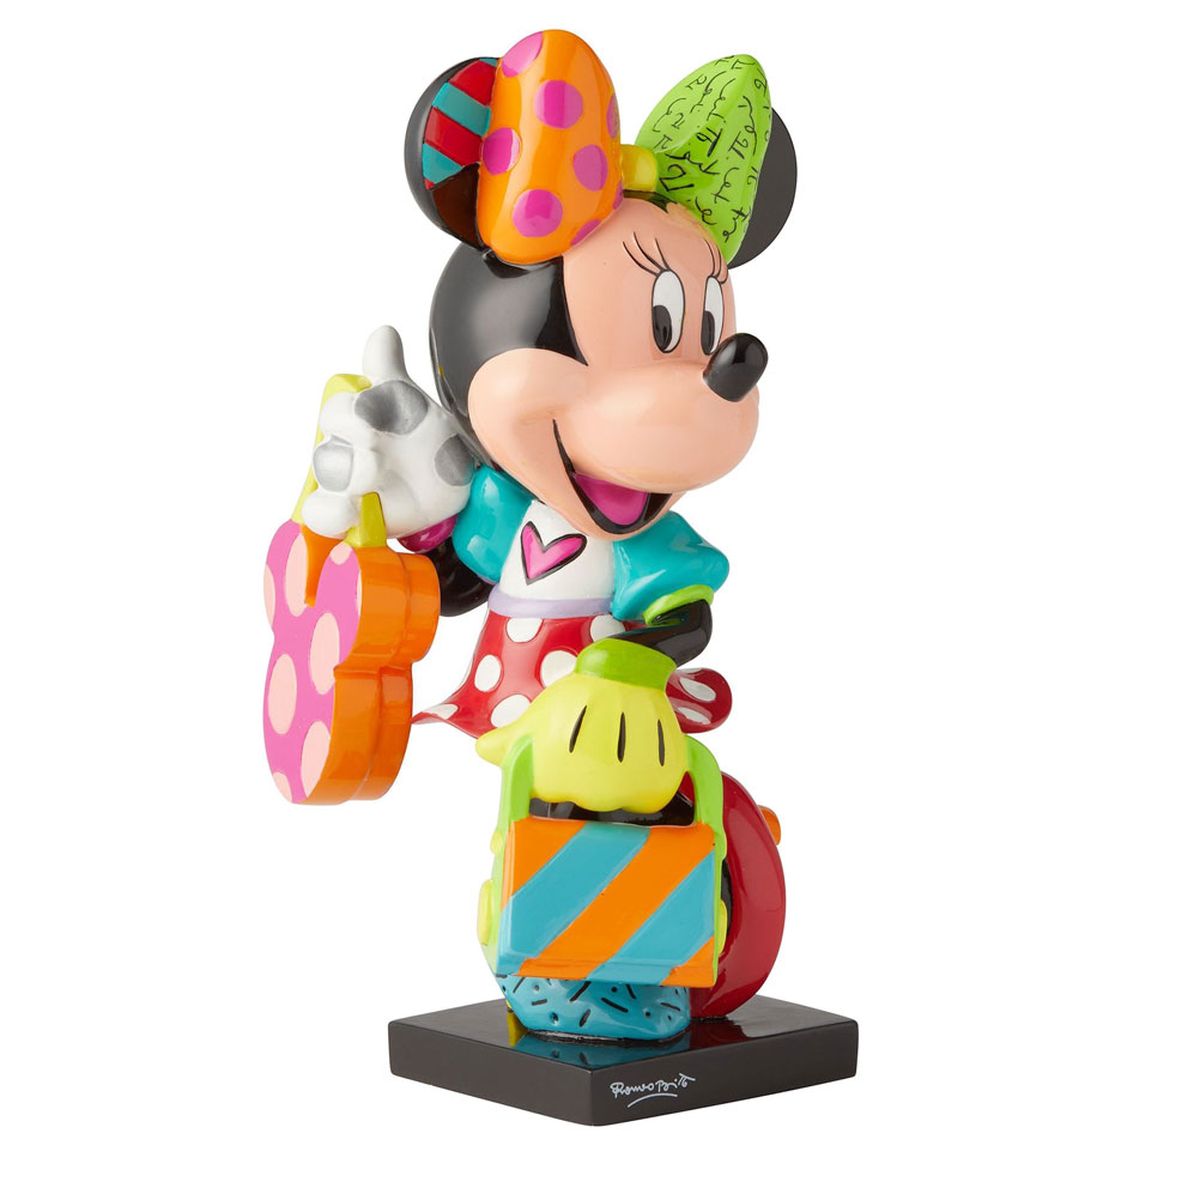 Minnie Mouse Fashionista Figurine - Romero Britto